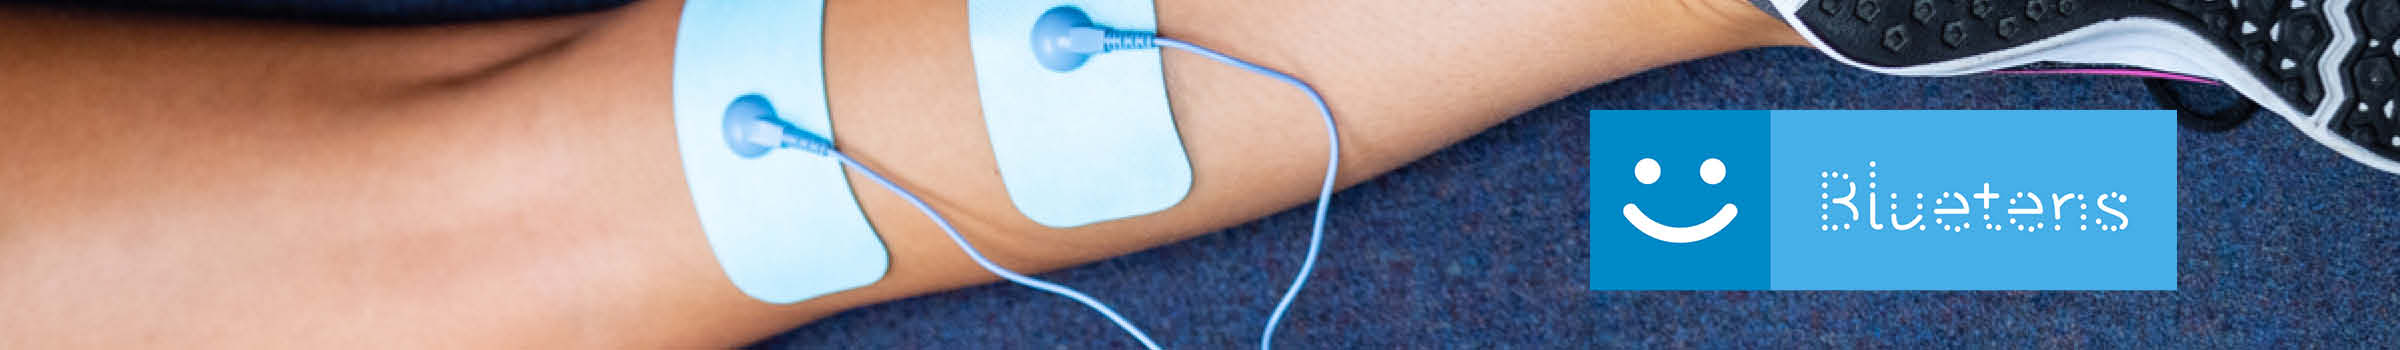 Coupler musculation et électrostimulation - Bluetens